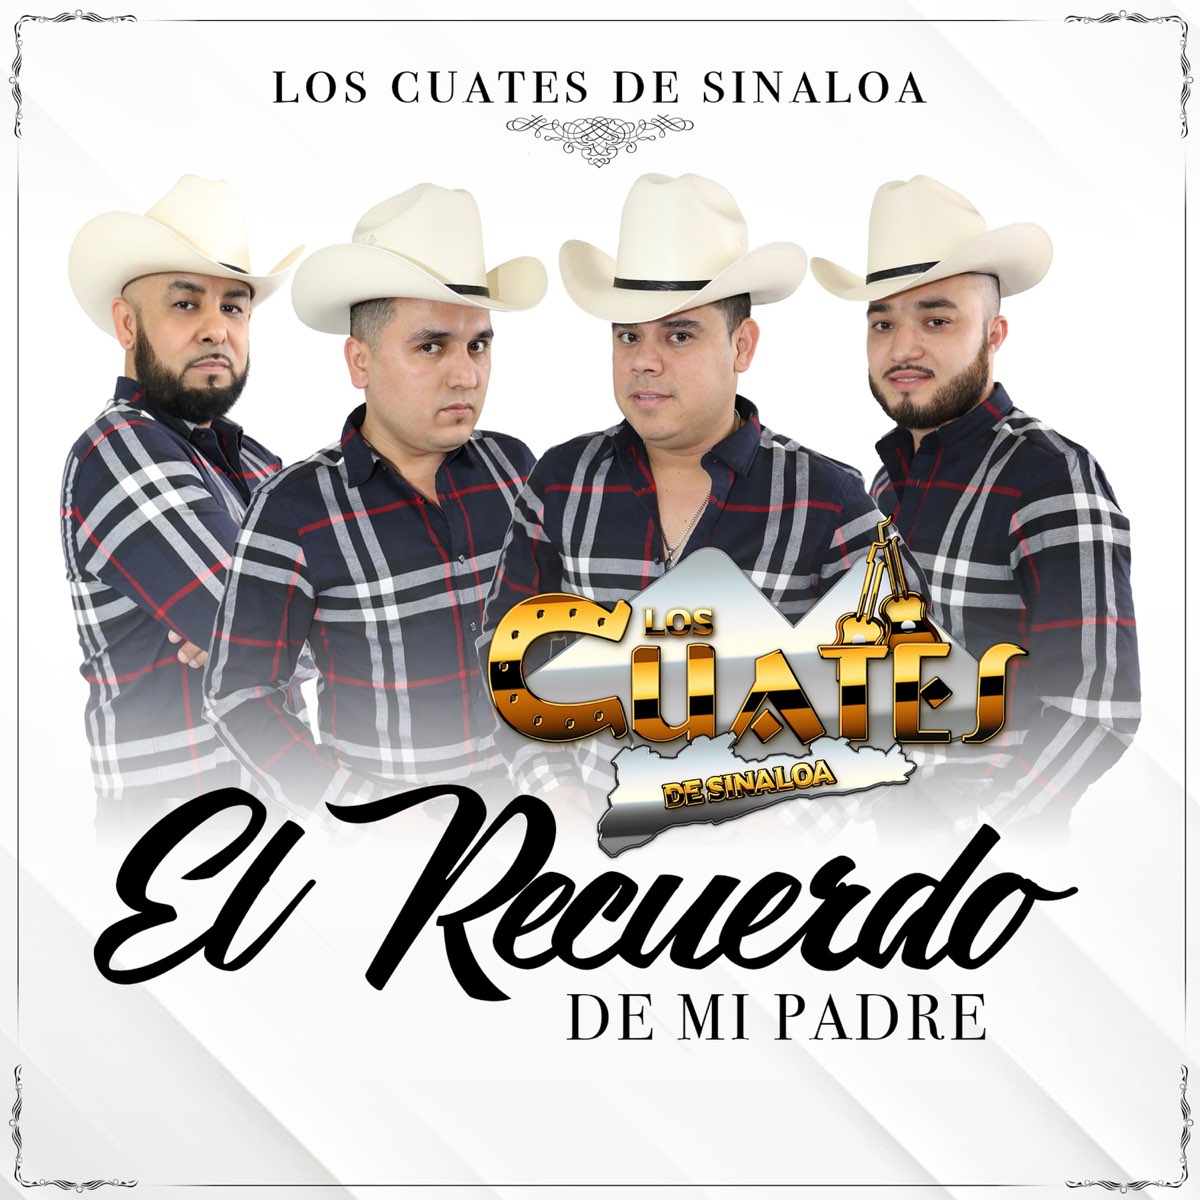 El Recuerdo de Mi Padre - Single de Los Cuates de Sinaloa en Apple Music